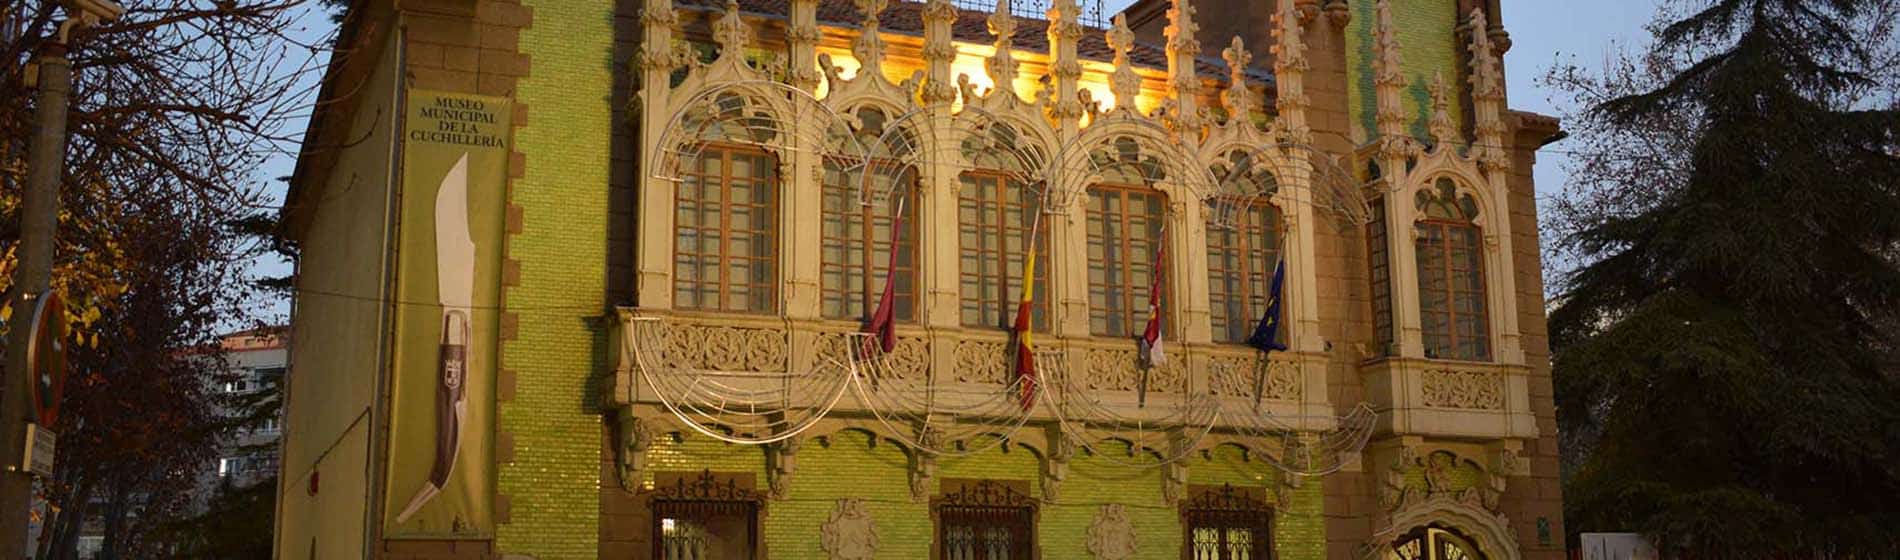 Albacete, Fachada del Museo de la Cuchería